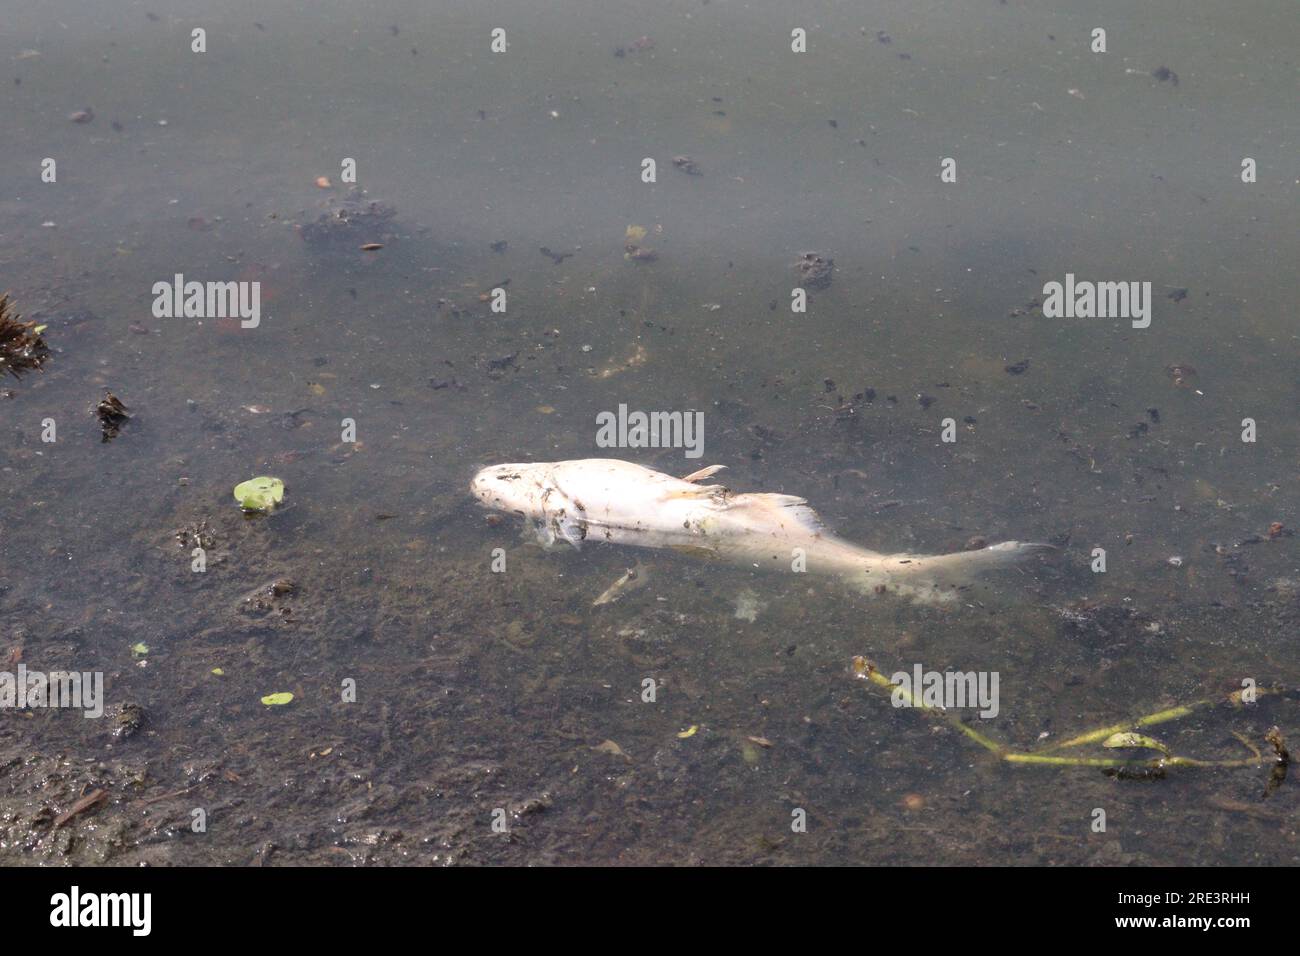 Toter Silberkarpfenfisch durch schlechtes Wasser im See Stockfoto